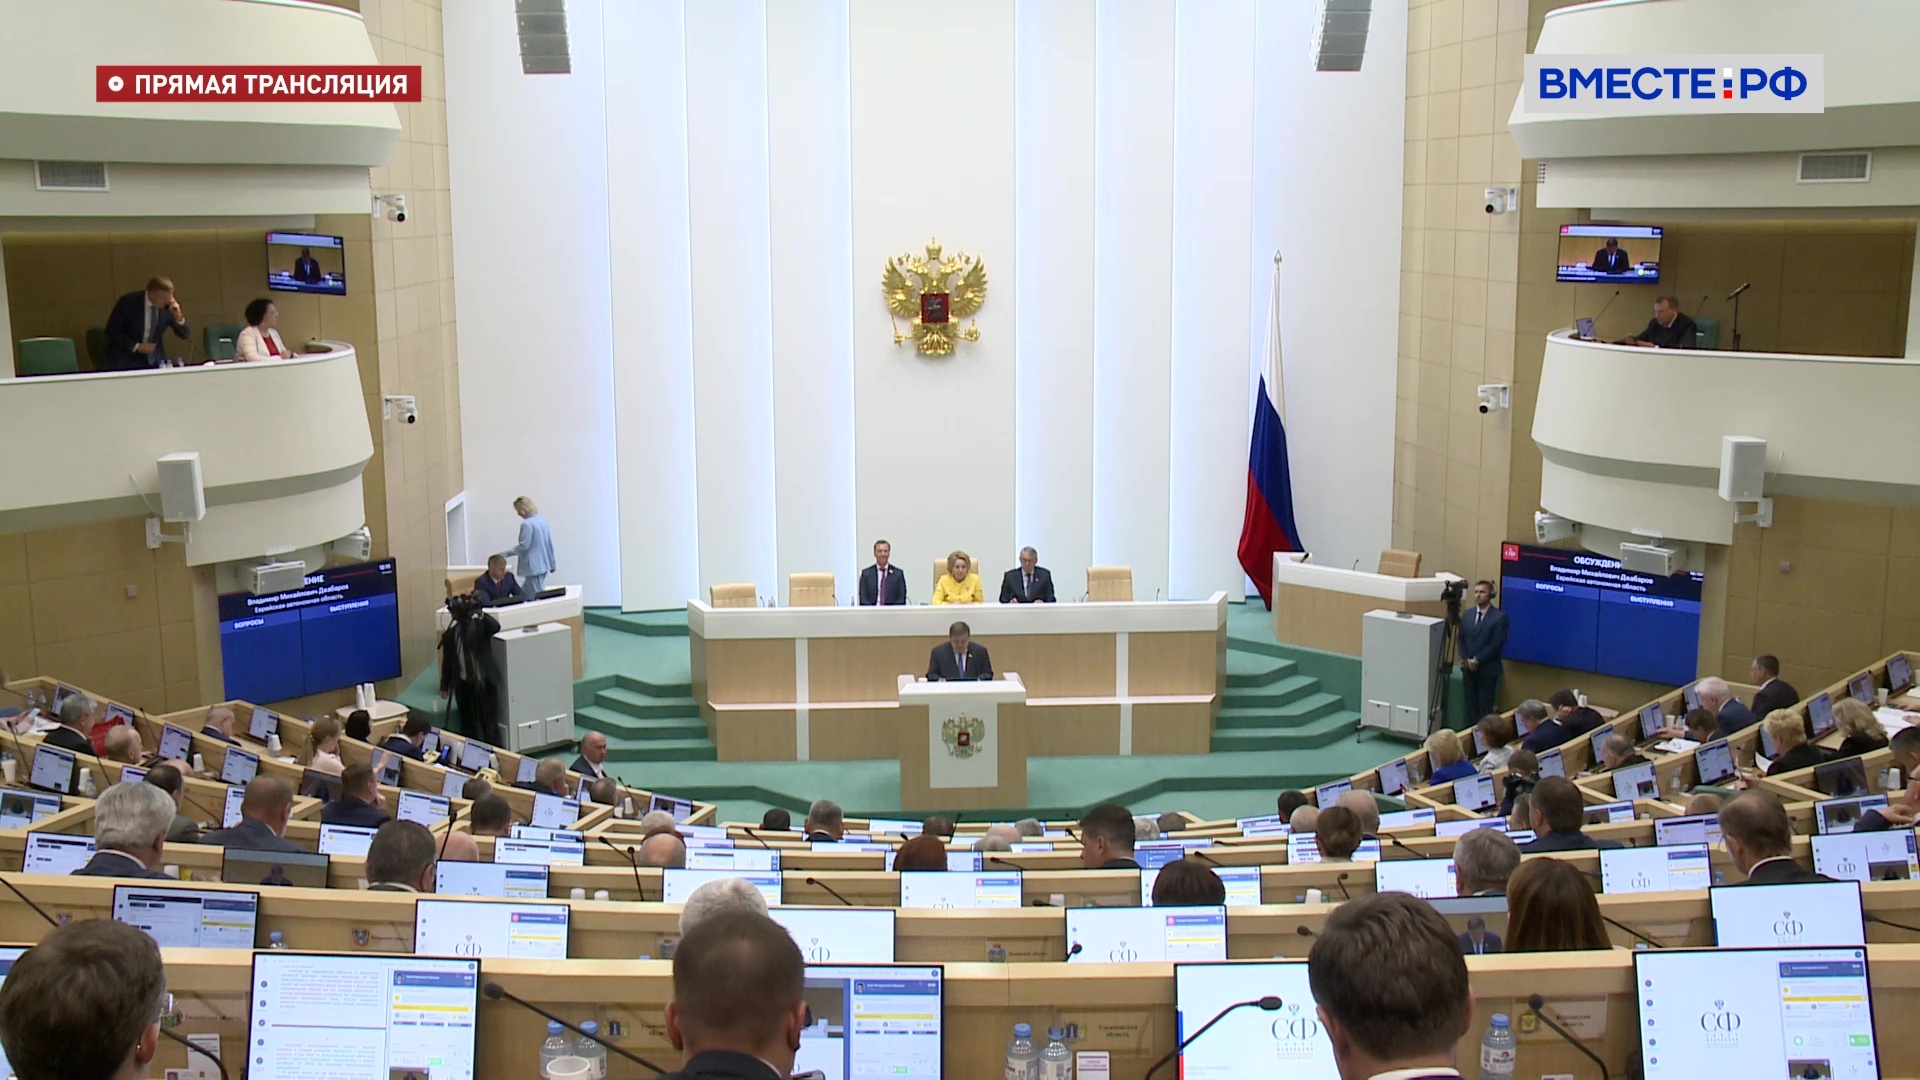 Федеральное Собрание РФ приостанавливает участие в работе ПА ОБСЕ